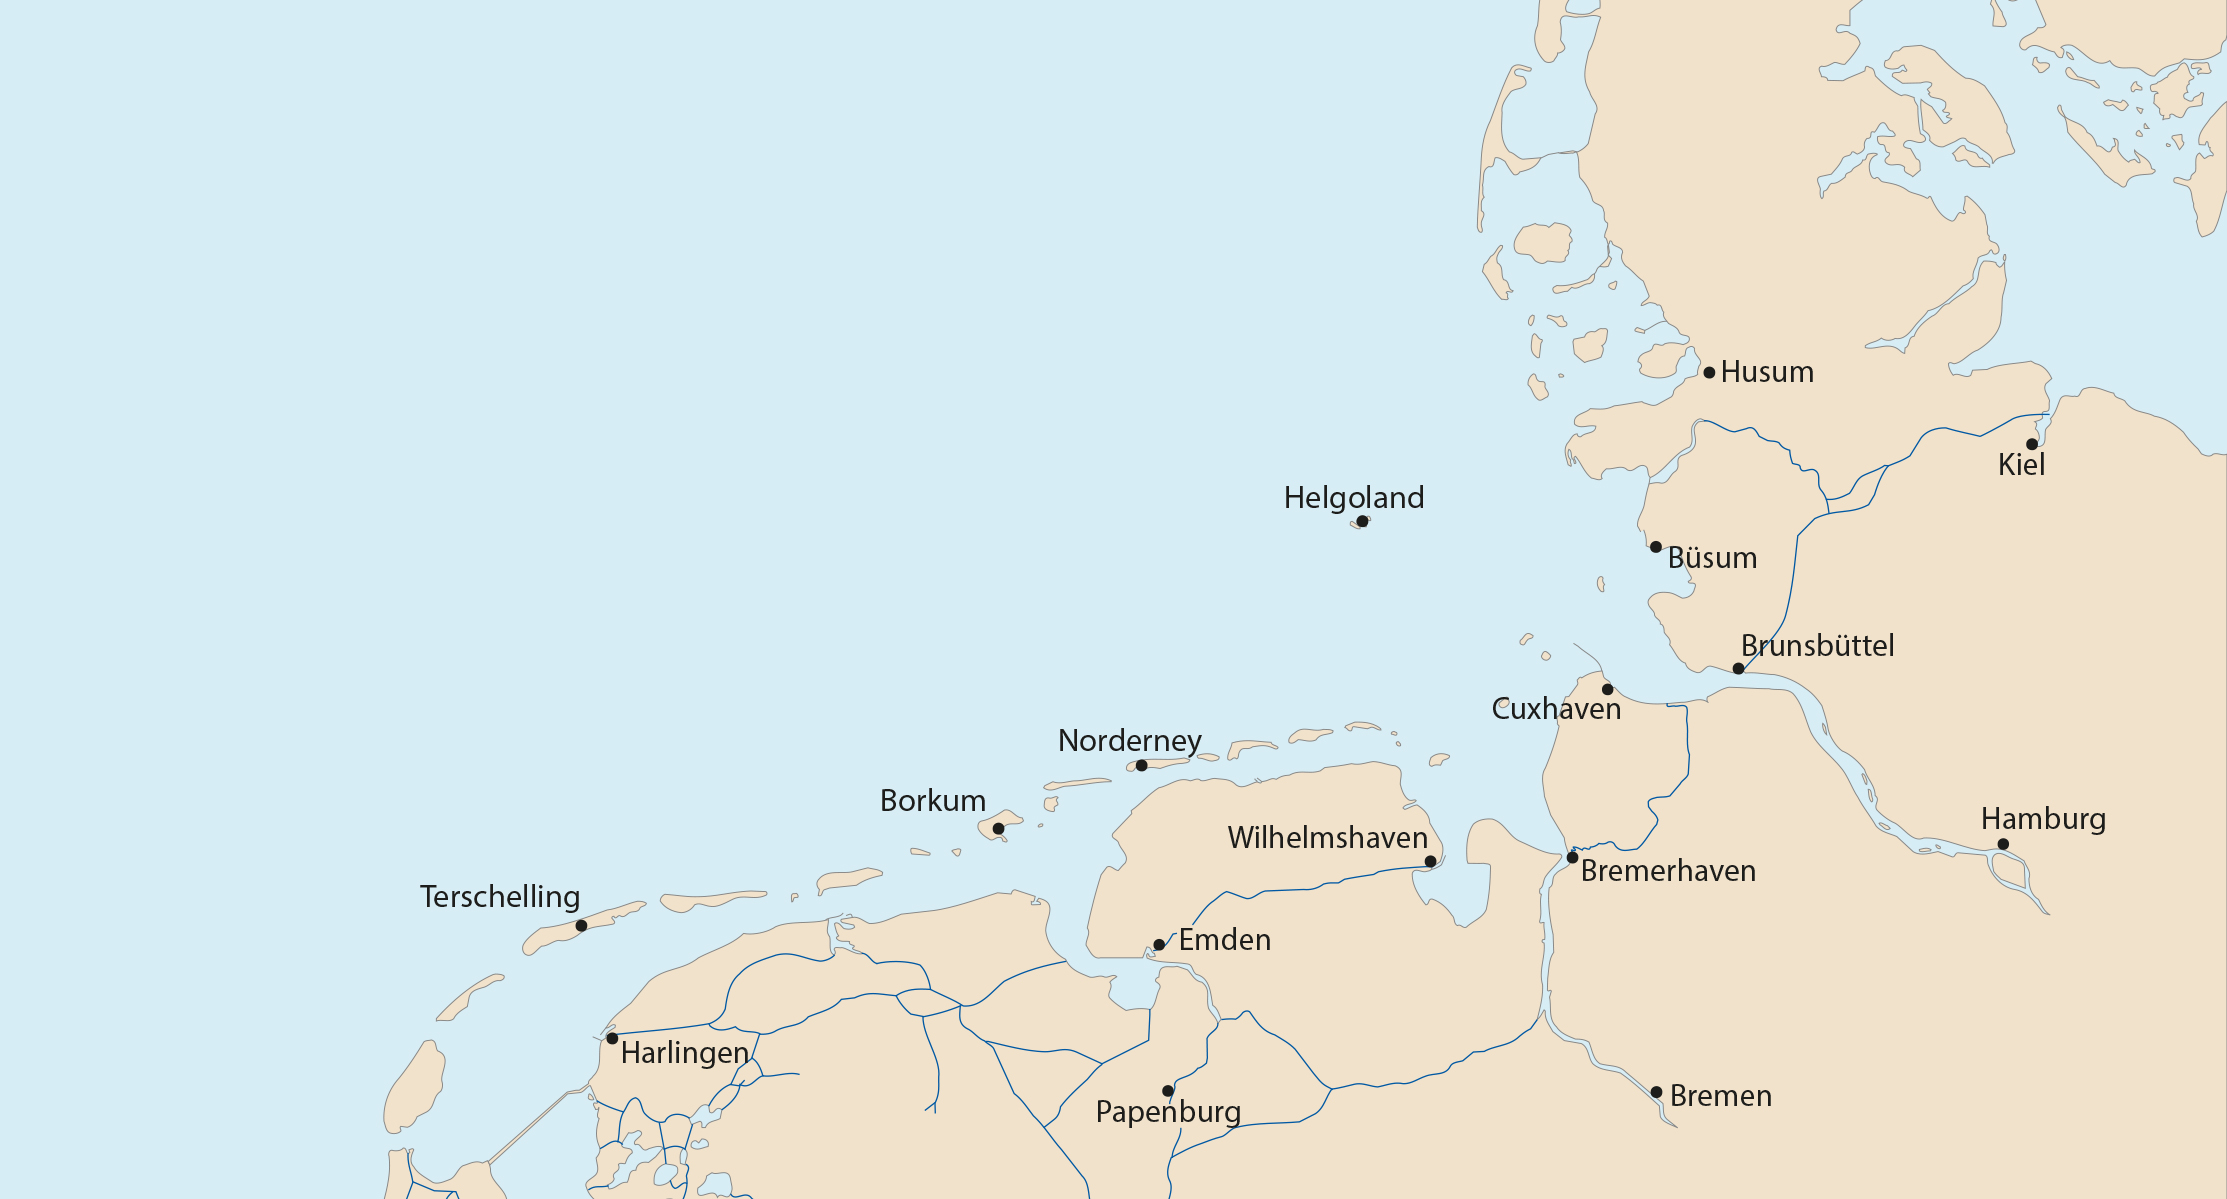 Kartenausschnitt der Deutschen Bucht in der Nordsee mit den für die Gezeitenvorausberechnung notwendigen Bezugsorten